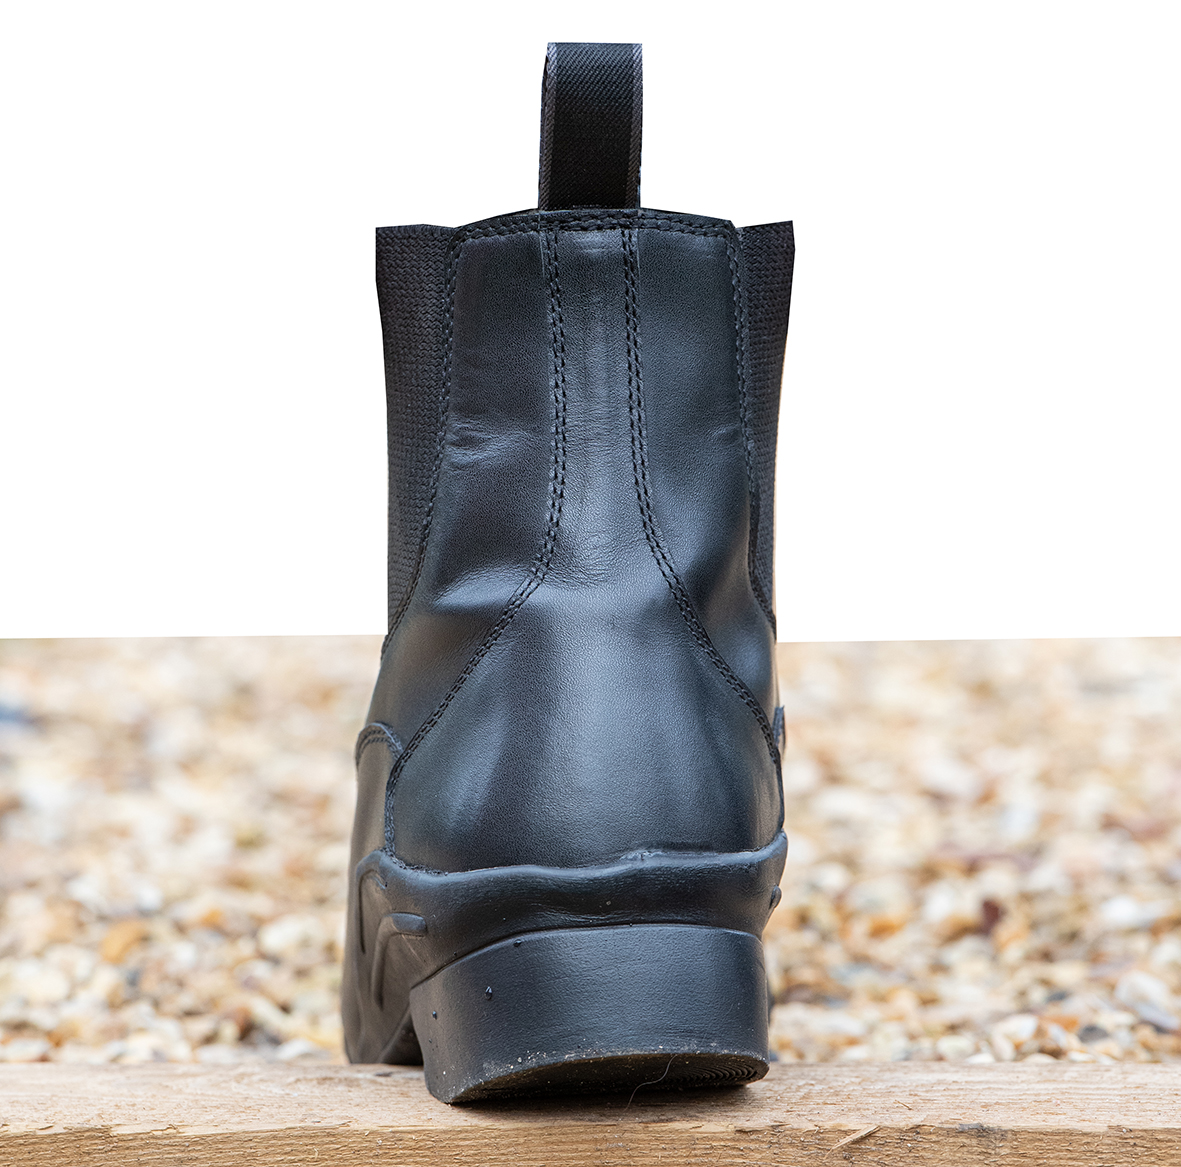 The Maisie Paddock Boot